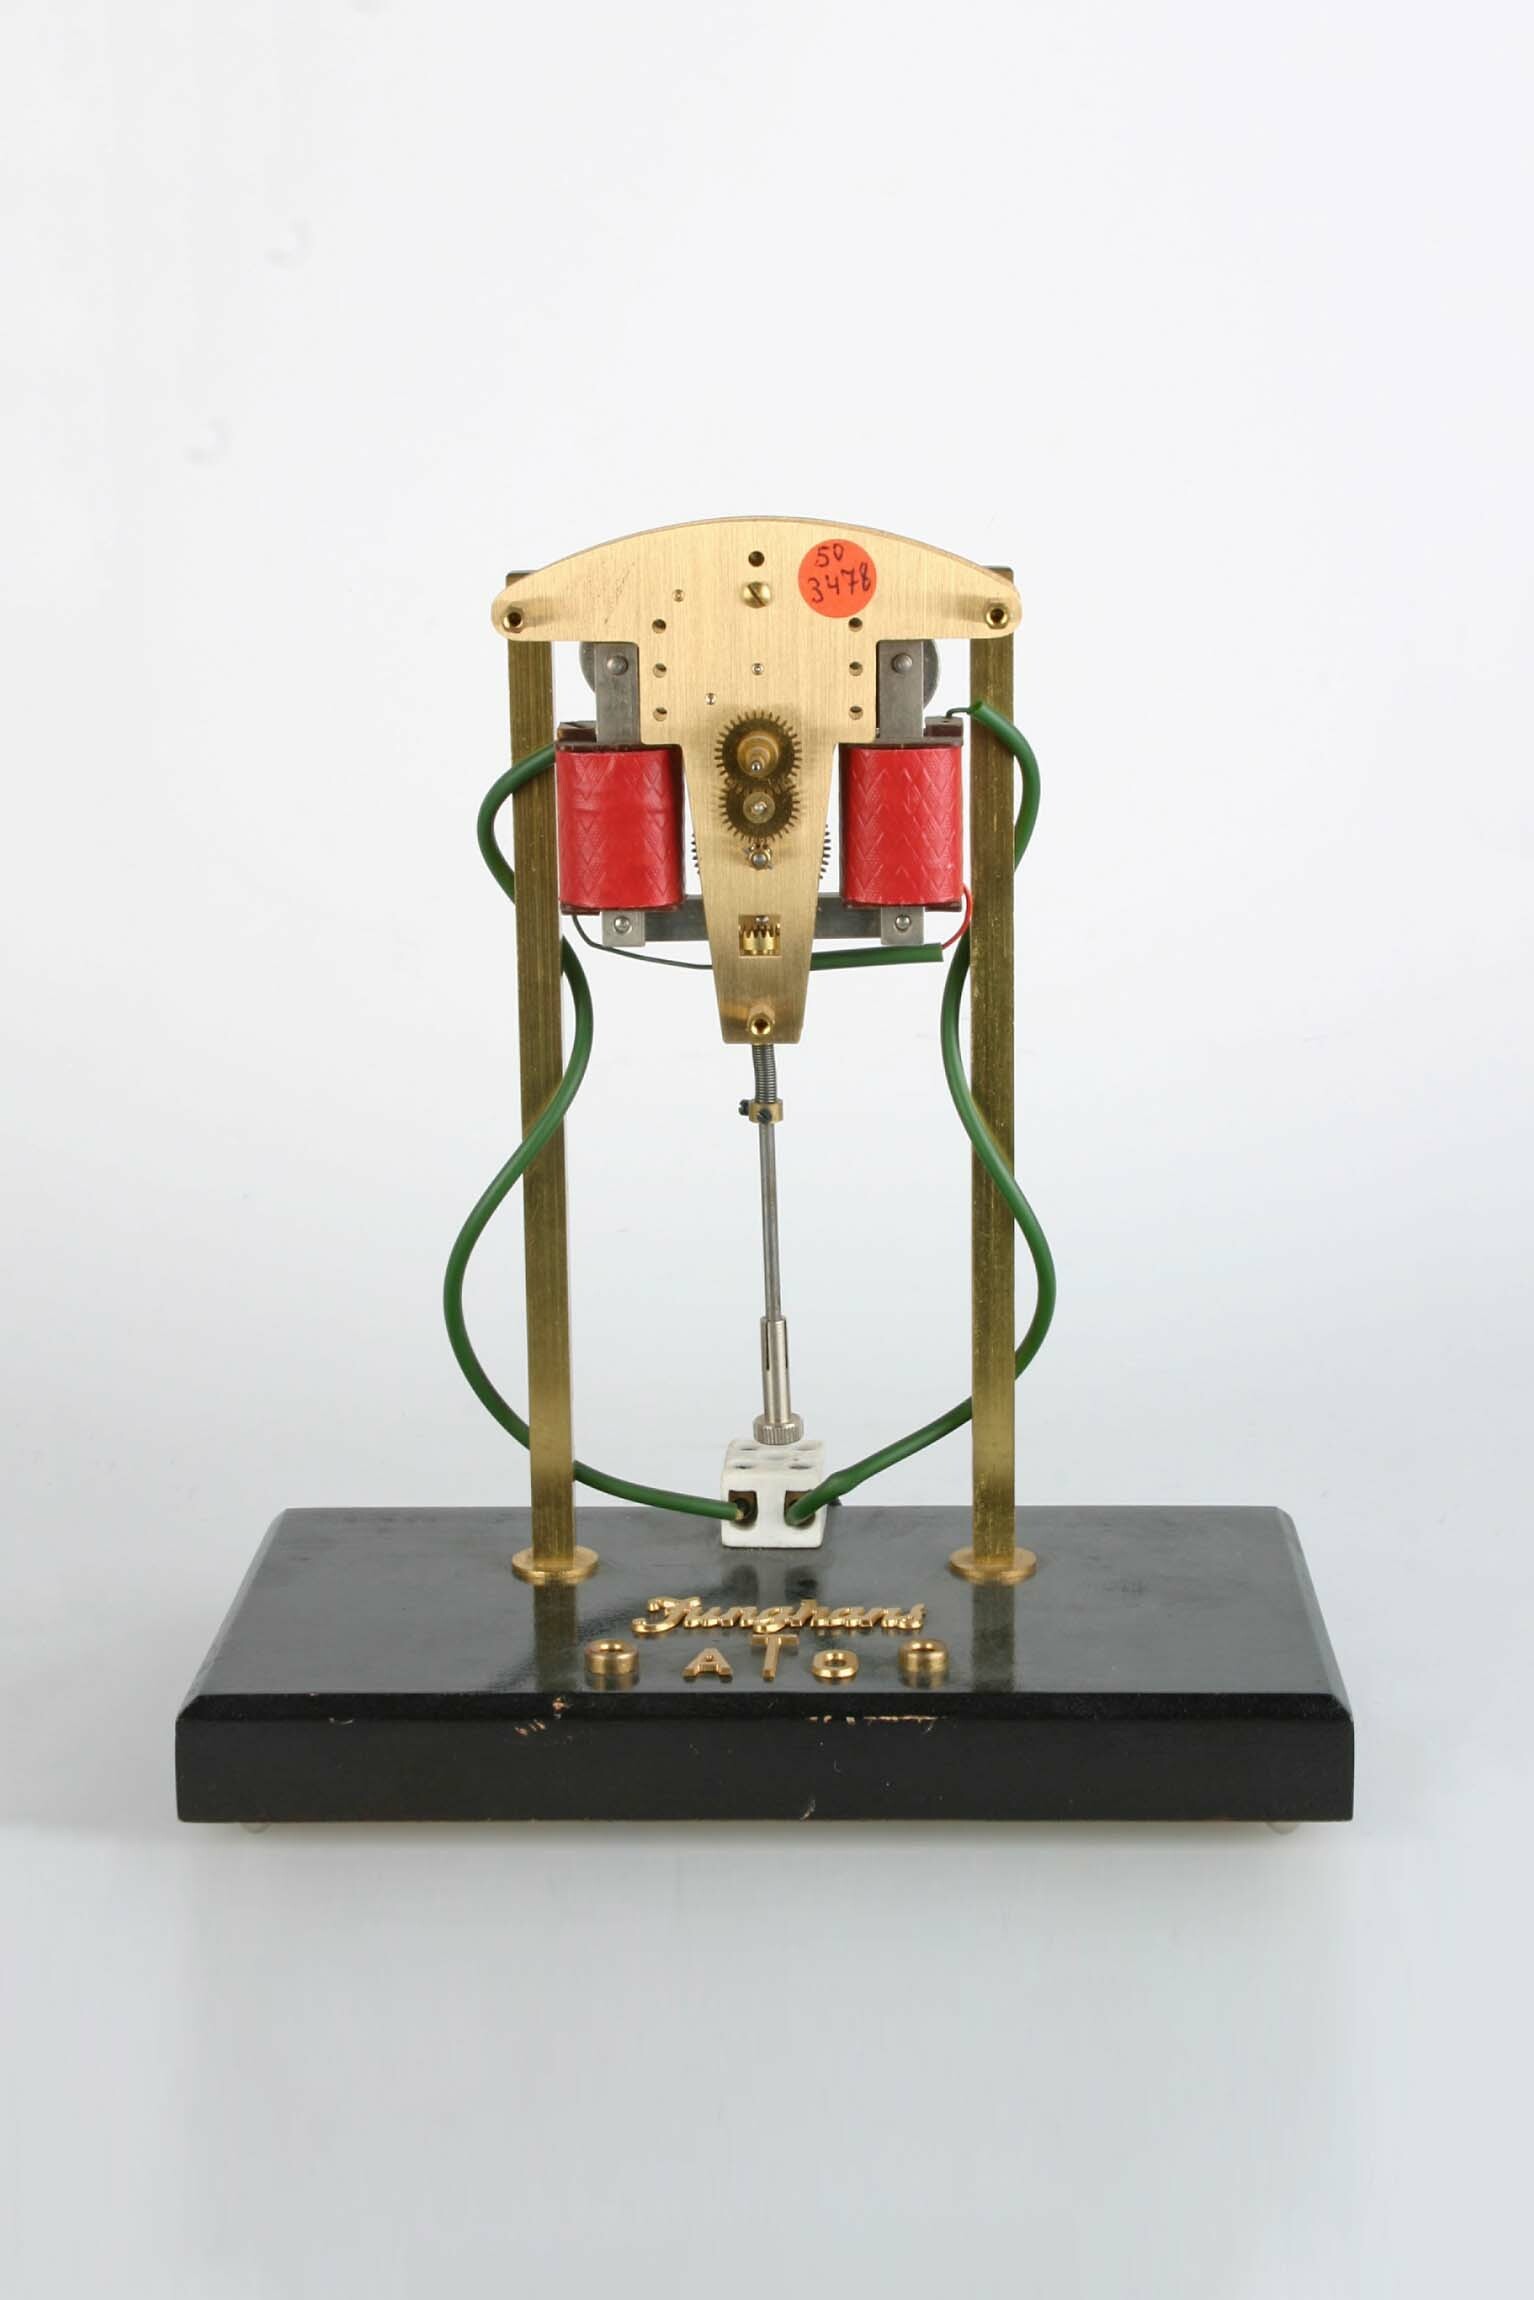 Nebenuhr, Modell, Junghans, Schramberg, 1950er Jahre (Deutsches Uhrenmuseum CC BY-SA)